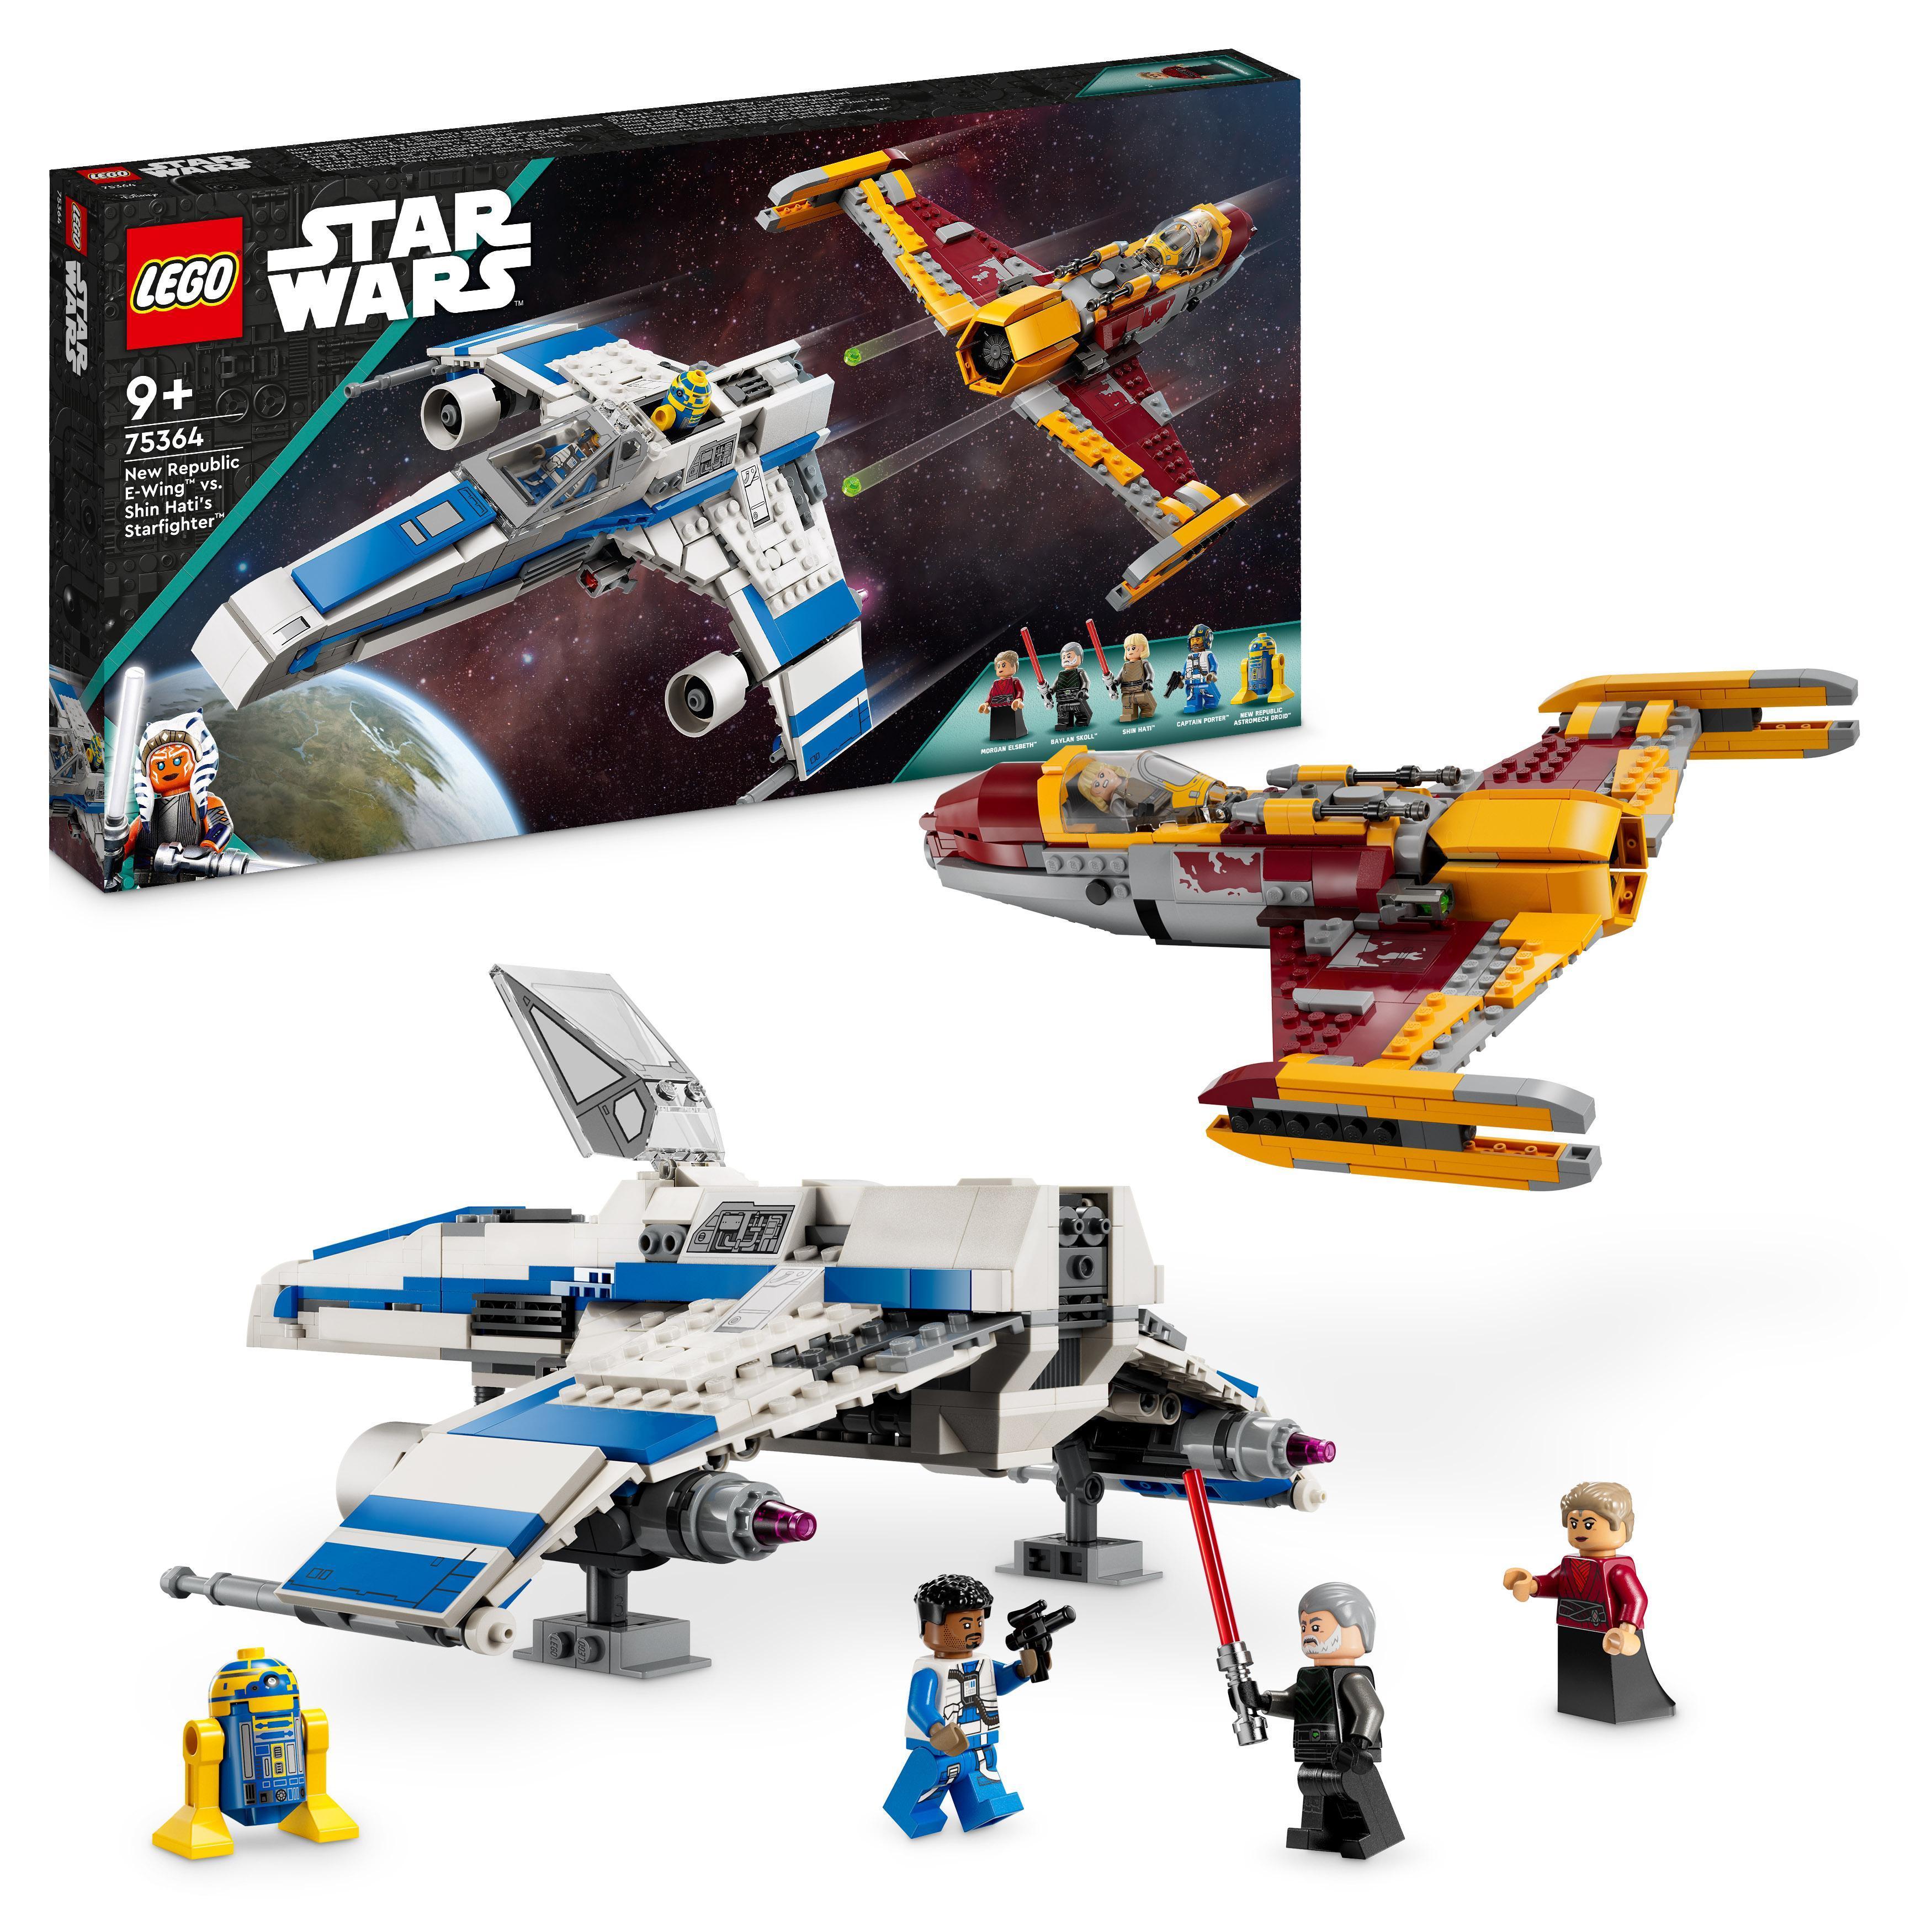 LEGO Star Wars - Den nye republikkens E-Wing™ mot Shin Hatis Starfighter™ (75364) - Leker